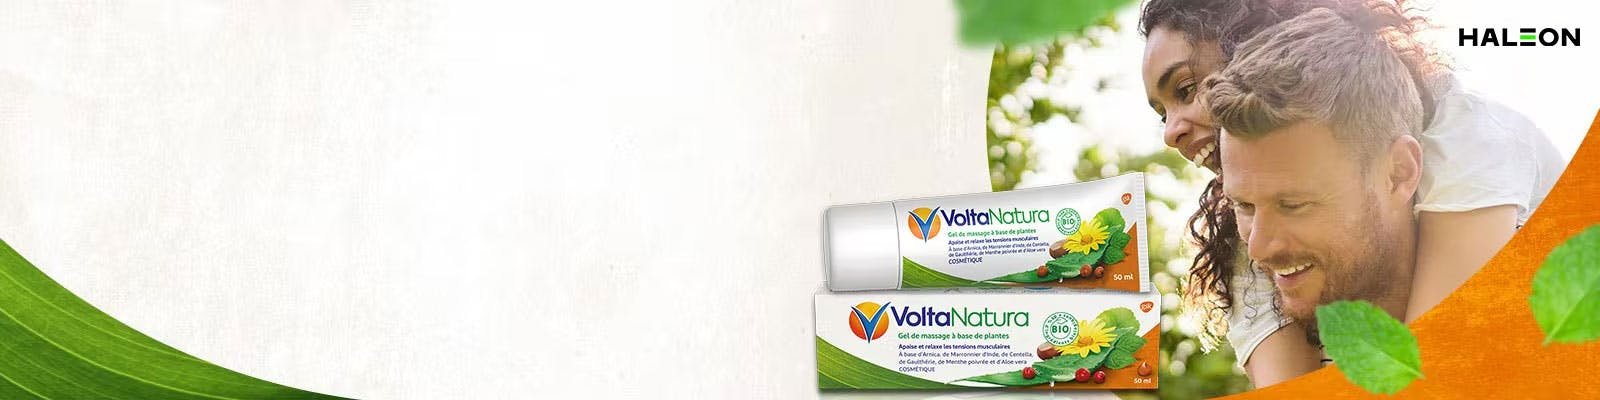 VoltaNatura produit et boite